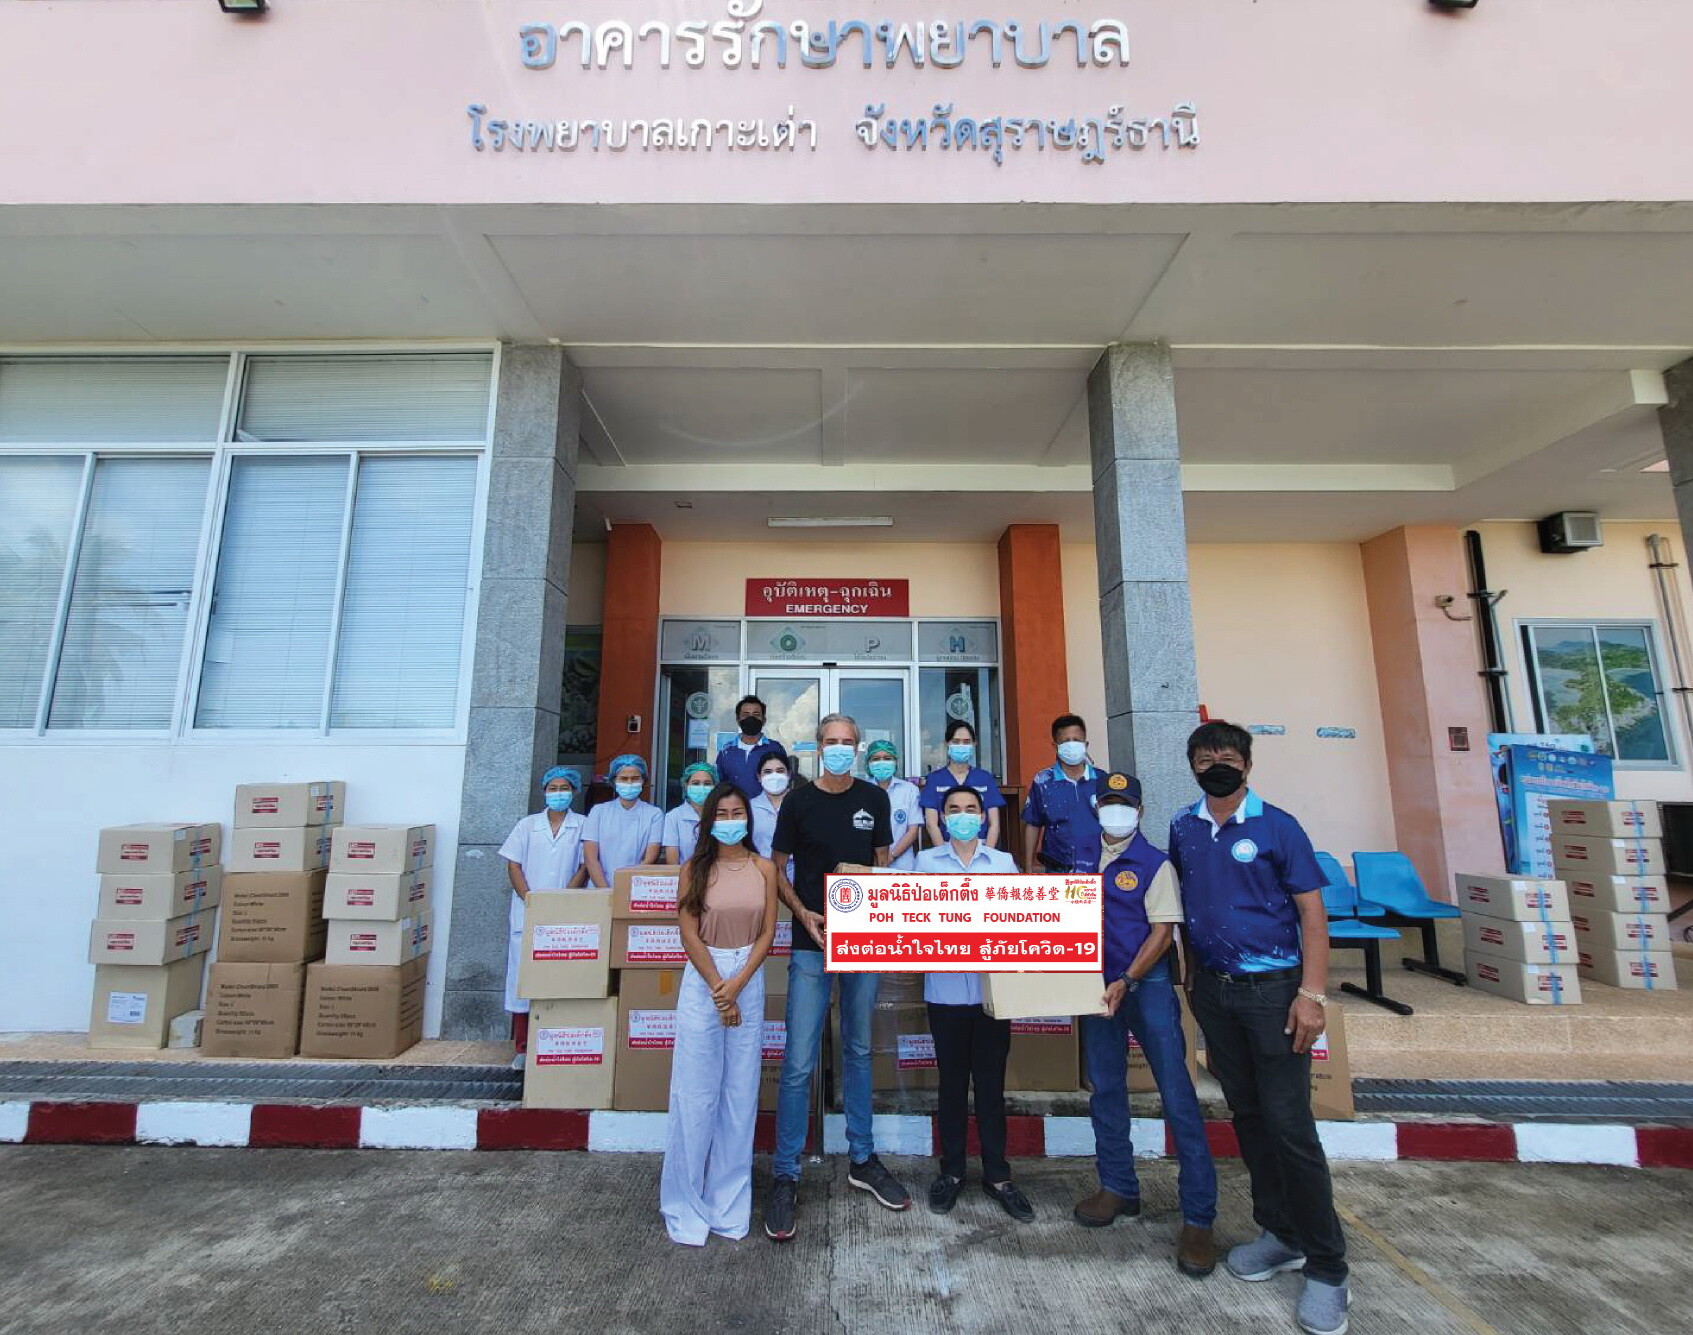 มูลนิธิป่อเต็กตึ๊ง ส่งต่อน้ำใจไทย .. มอบอุปกรณ์ทางการแพทย์แก่โรงพยาบาลเกาะเต่า จังหวัดสุราษฎร์ธานี สู้ภัยโควิด-19